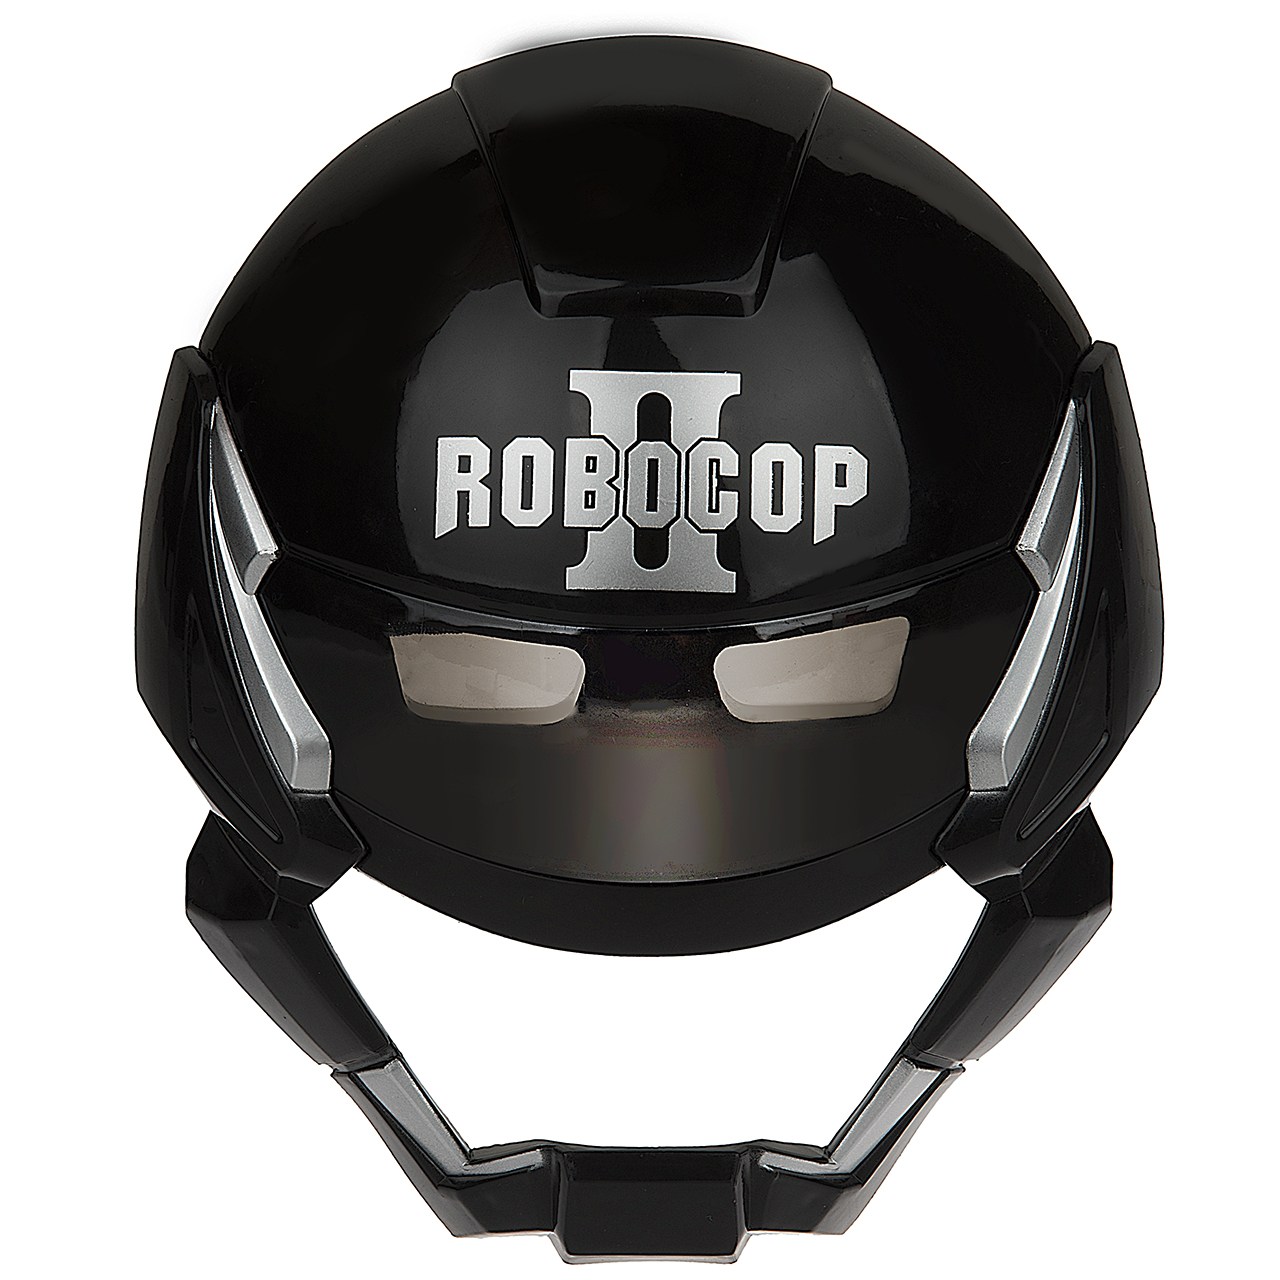 ماسک چراغ دار مدل Robocop